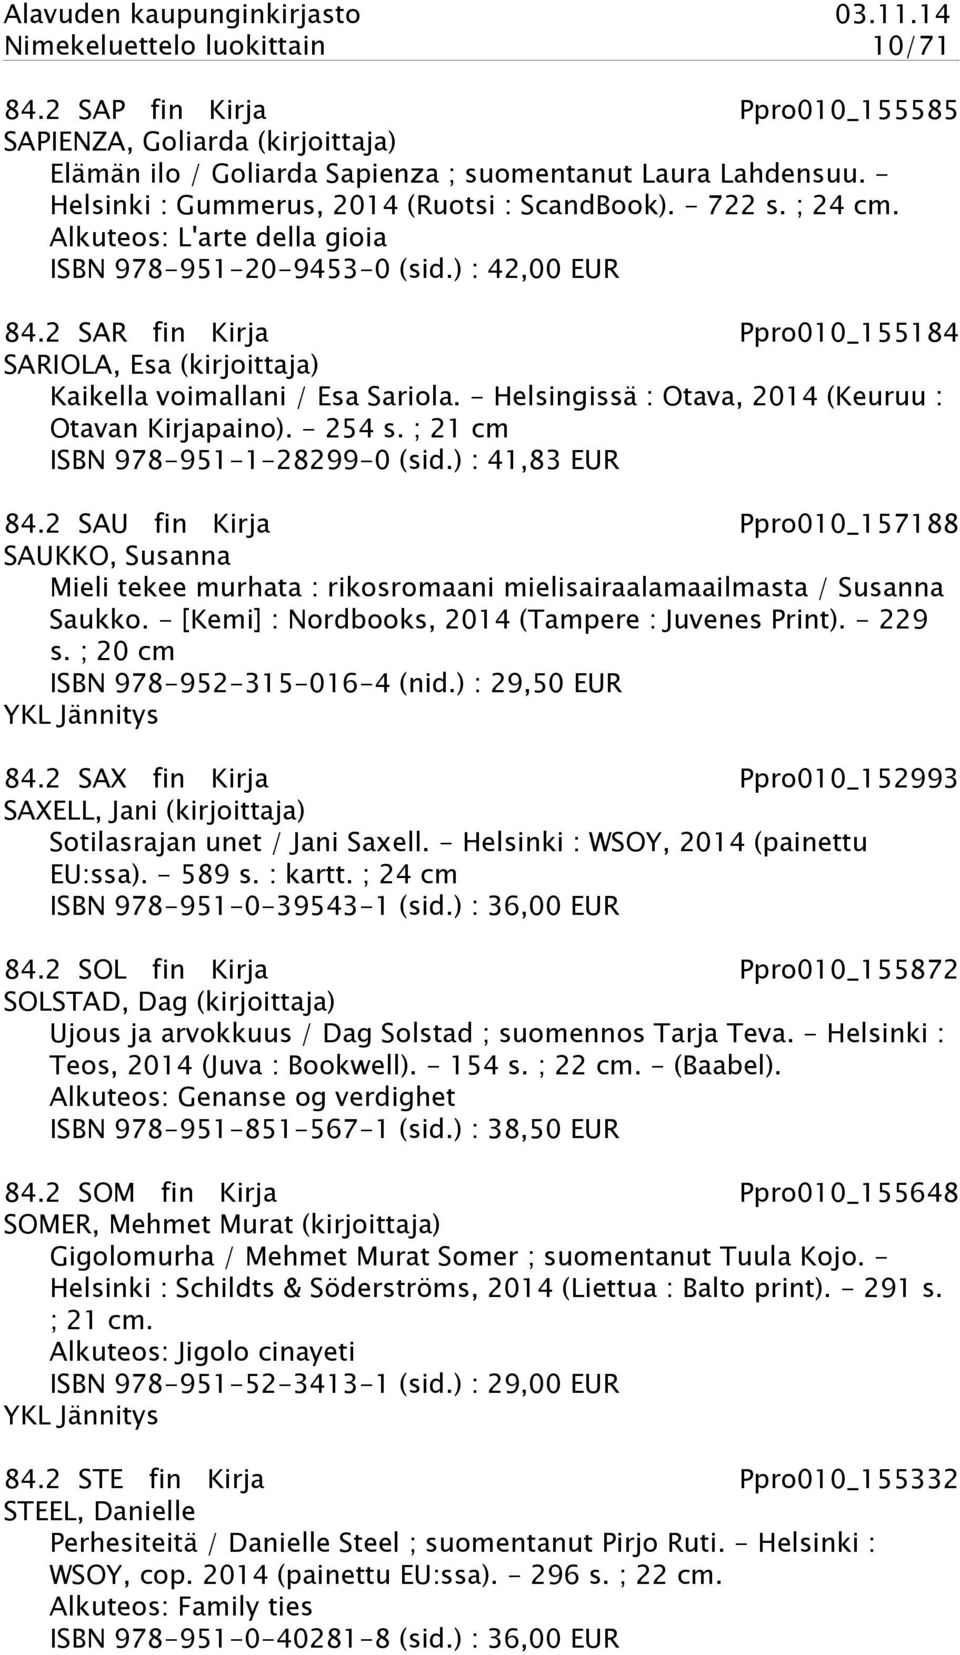 2 SAR fin Kirja Ppro010_155184 SARIOLA, Esa (kirjoittaja) Kaikella voimallani / Esa Sariola. - Helsingissä : Otava, 2014 (Keuruu : Otavan Kirjapaino). - 254 s. ; 21 cm ISBN 978-951-1-28299-0 (sid.